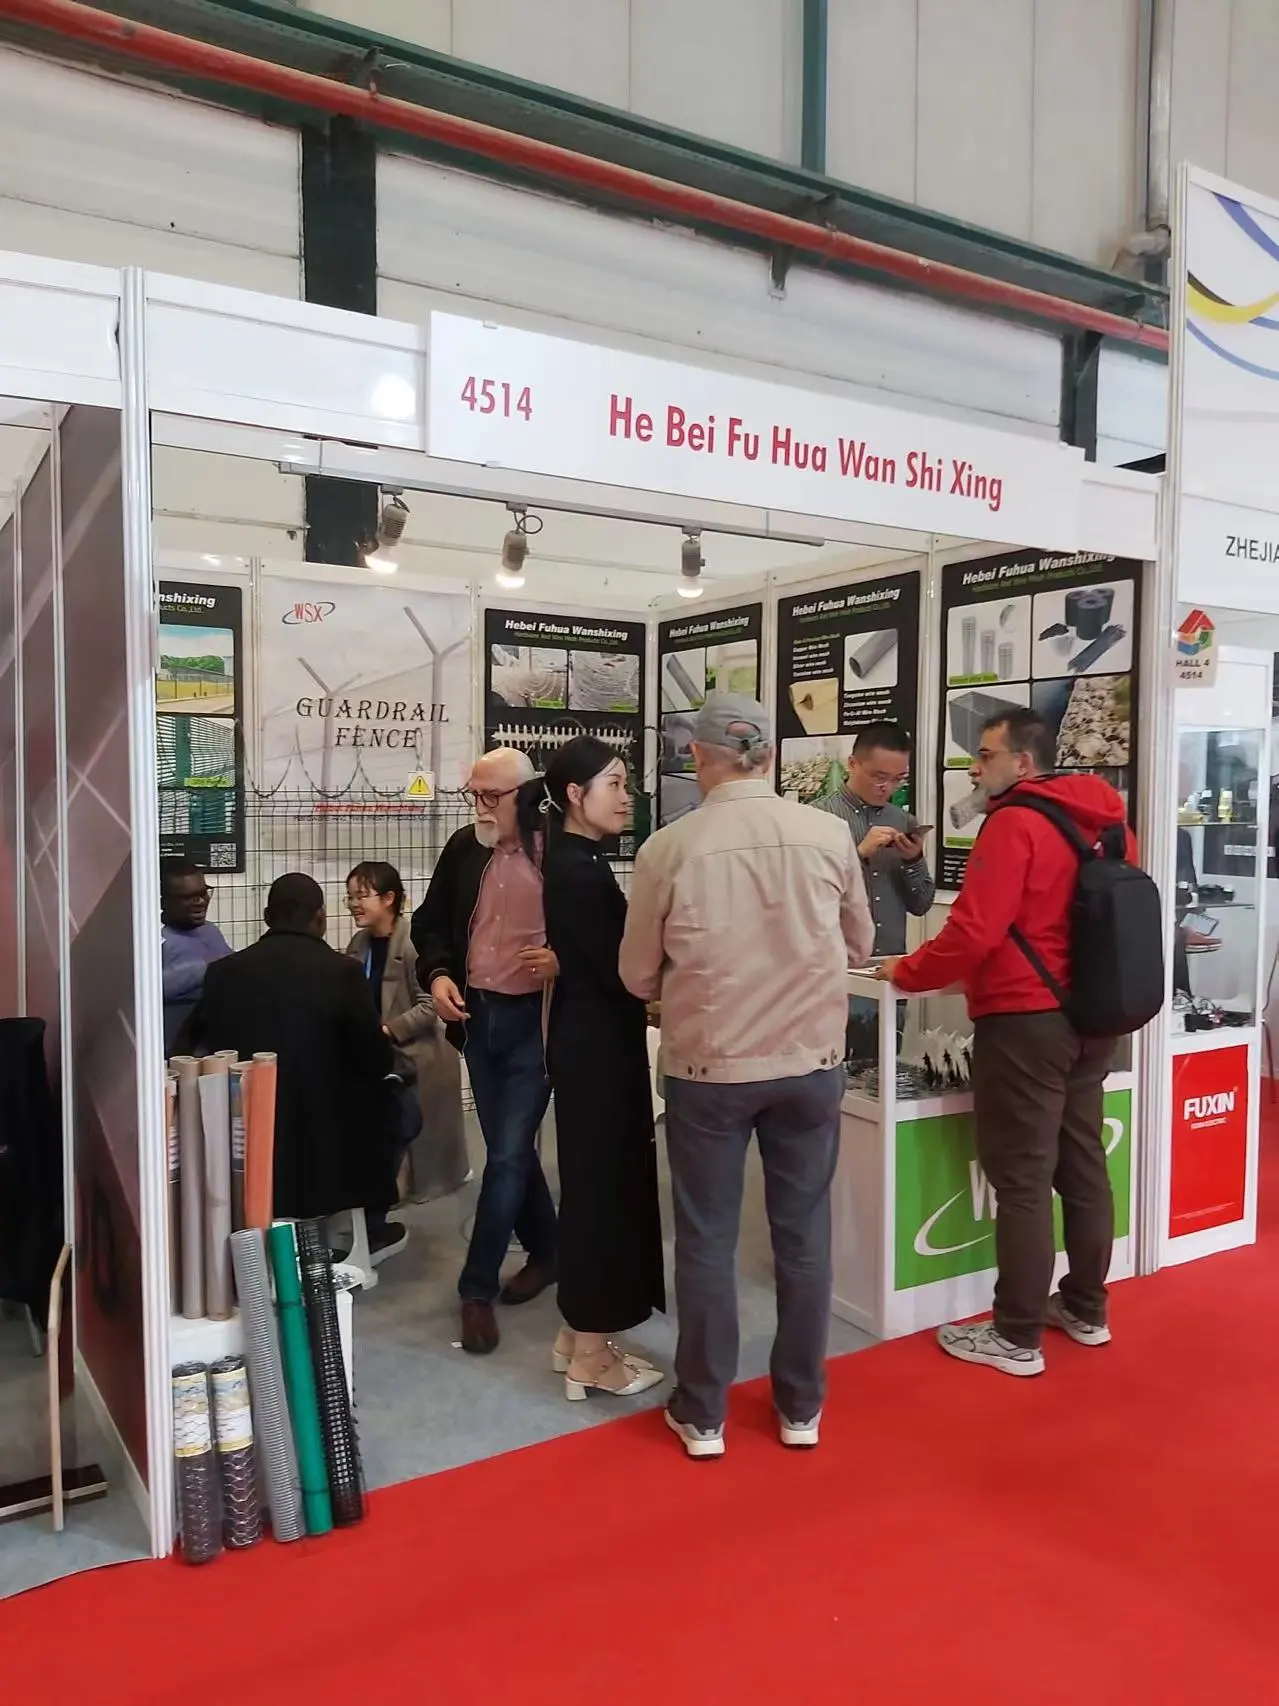 Exhibitions in Turkey